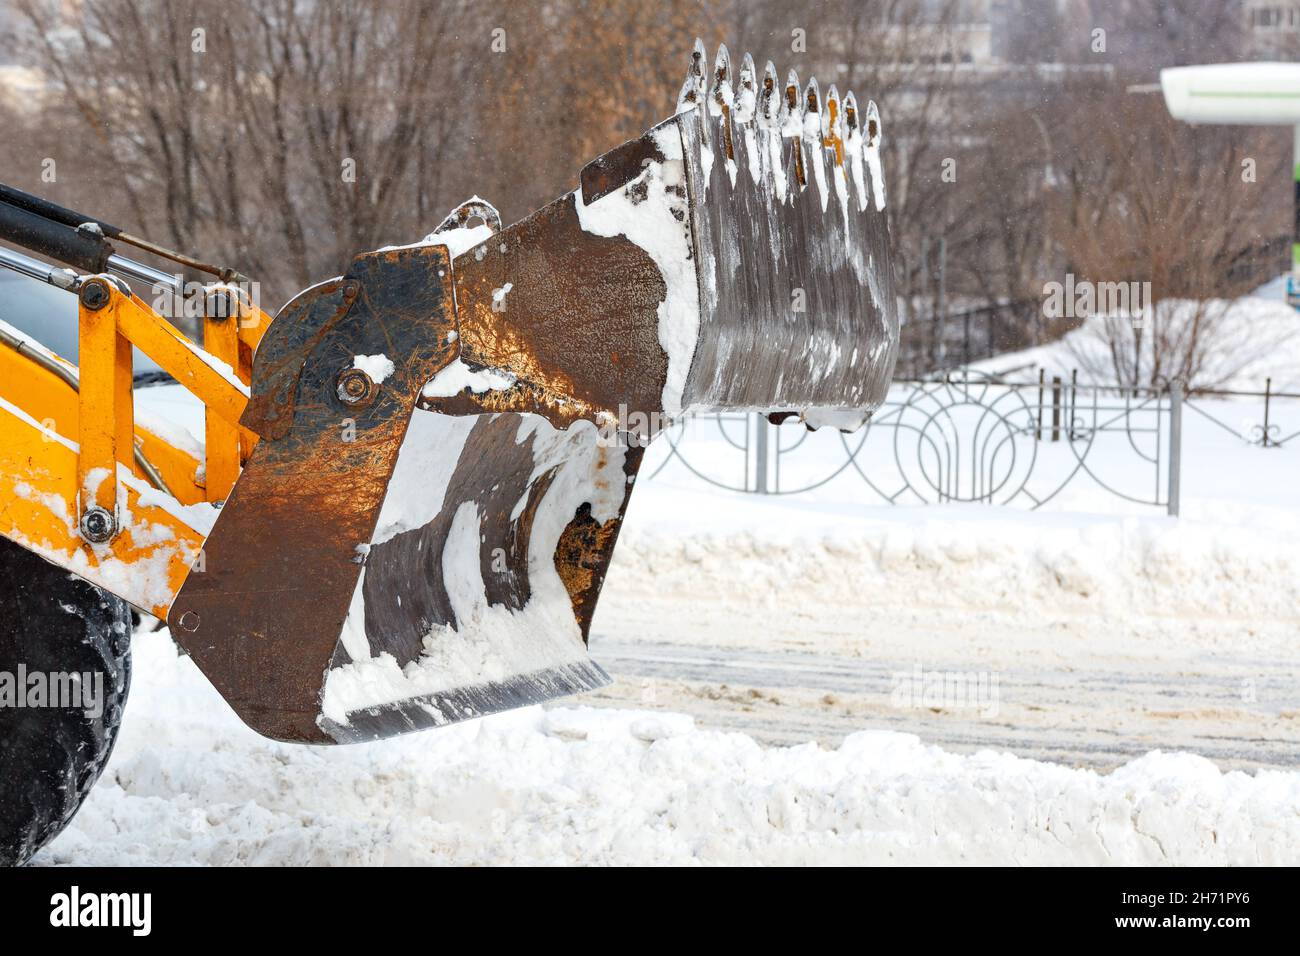 Un grand seau extensible d'un tracteur jaune pelle la neige d'une route urbaine sur fond de rue urbaine. Banque D'Images